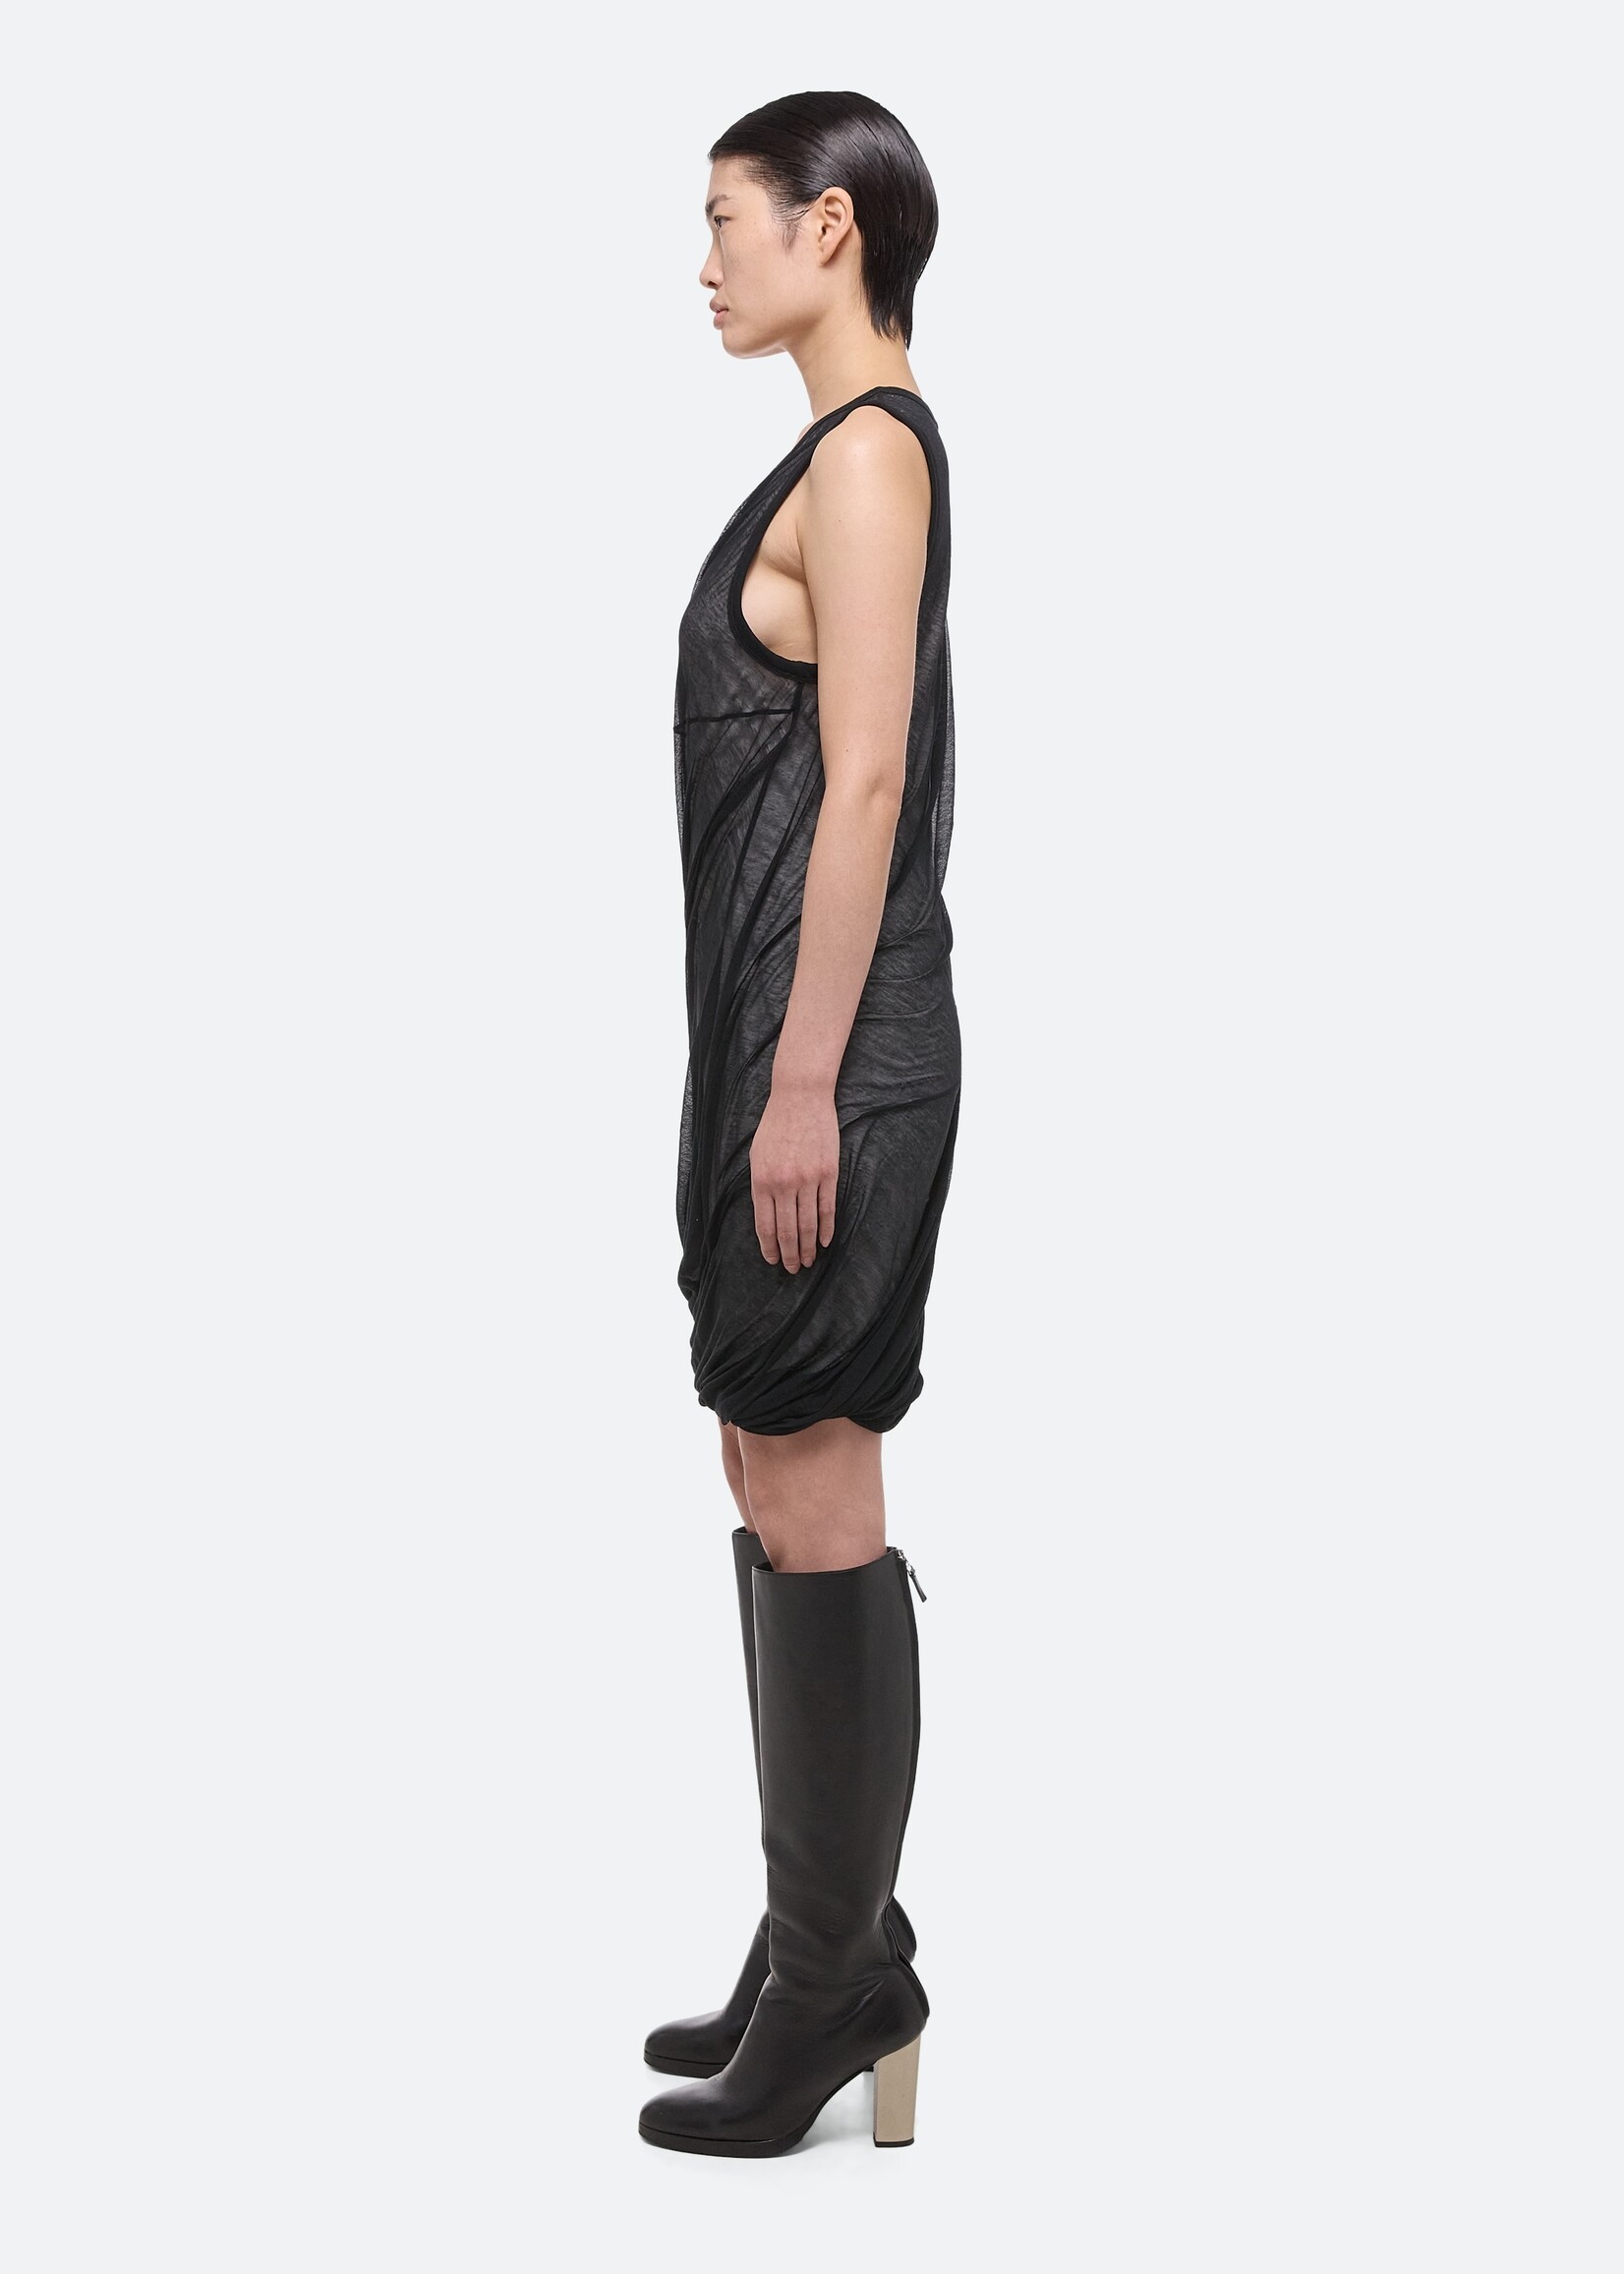 HELMUT LANG BY PETER DO Women's Sheer Jersey Bubble Dress in Black